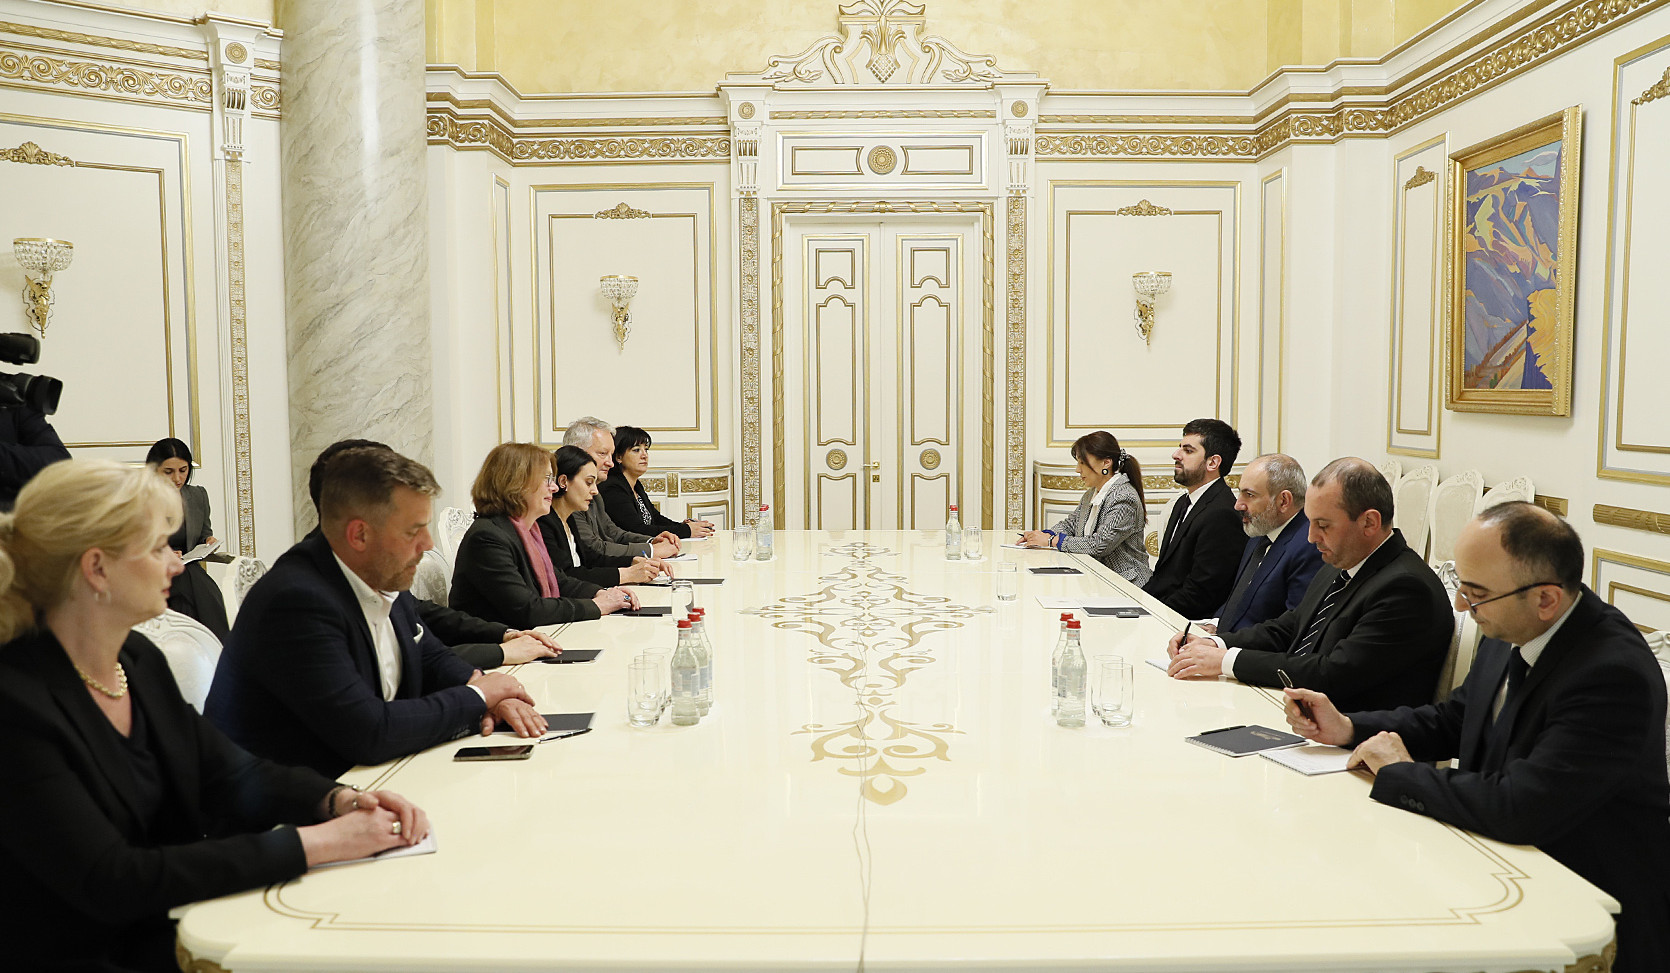 ՀՀ վարչապետը և Բունդեսթագի պատգամավորները մտքեր են փոխանակել անվտանգային մարտահրավերների և խաղաղության օրակարգի շուրջ